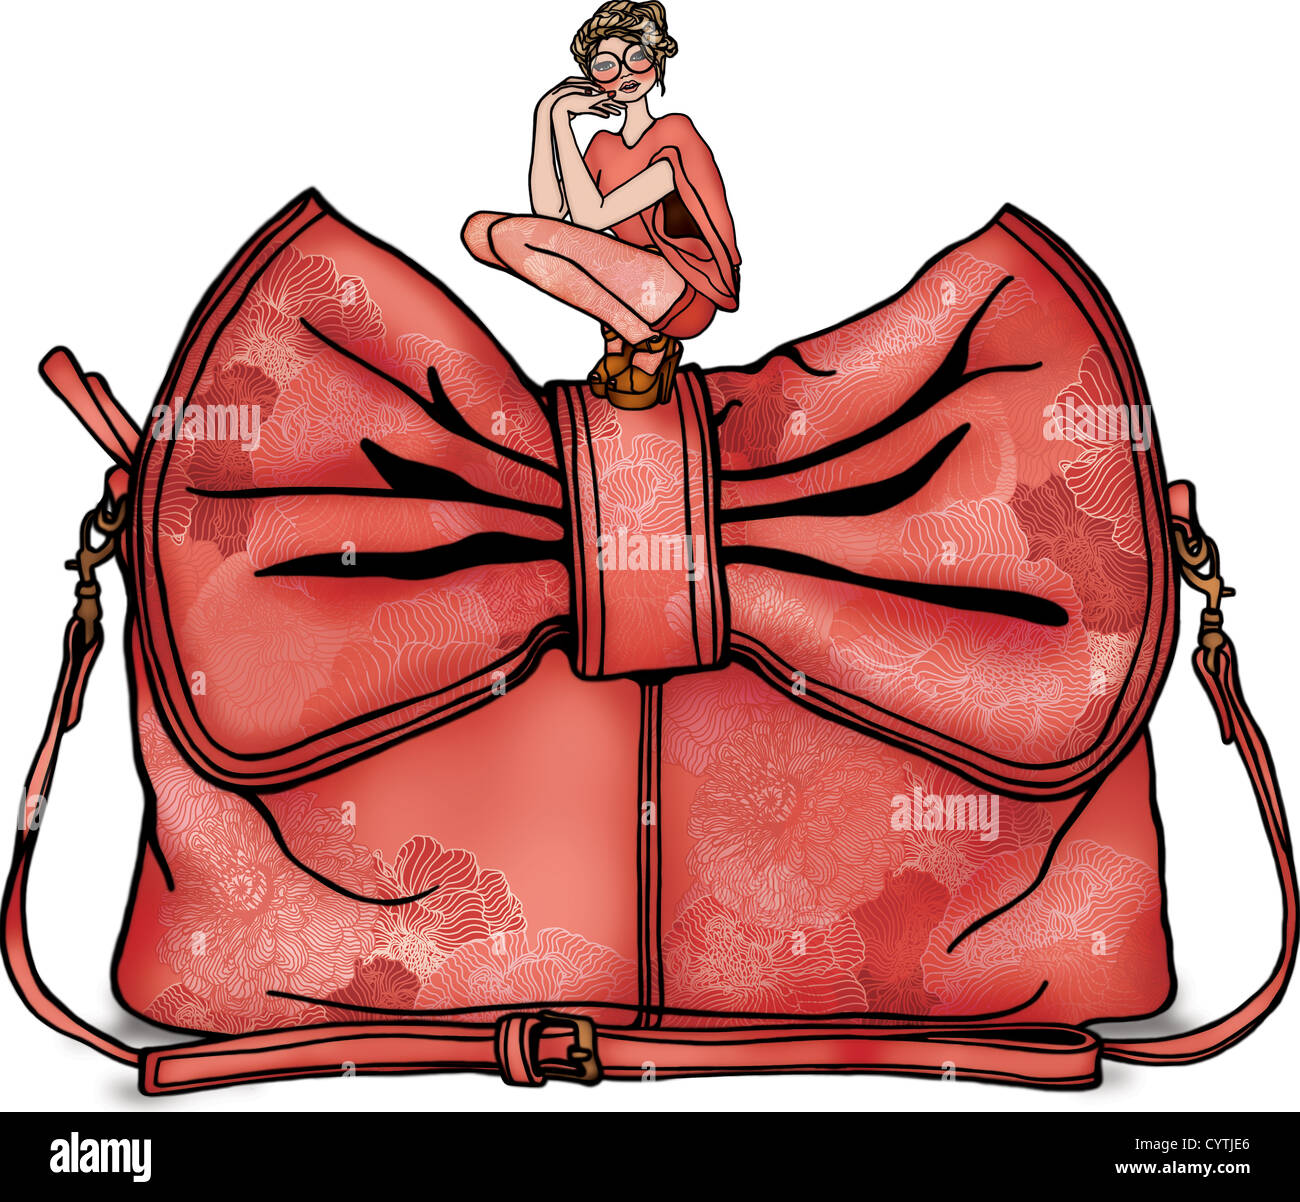 Une femme assise sur un sac à main géant Banque D'Images